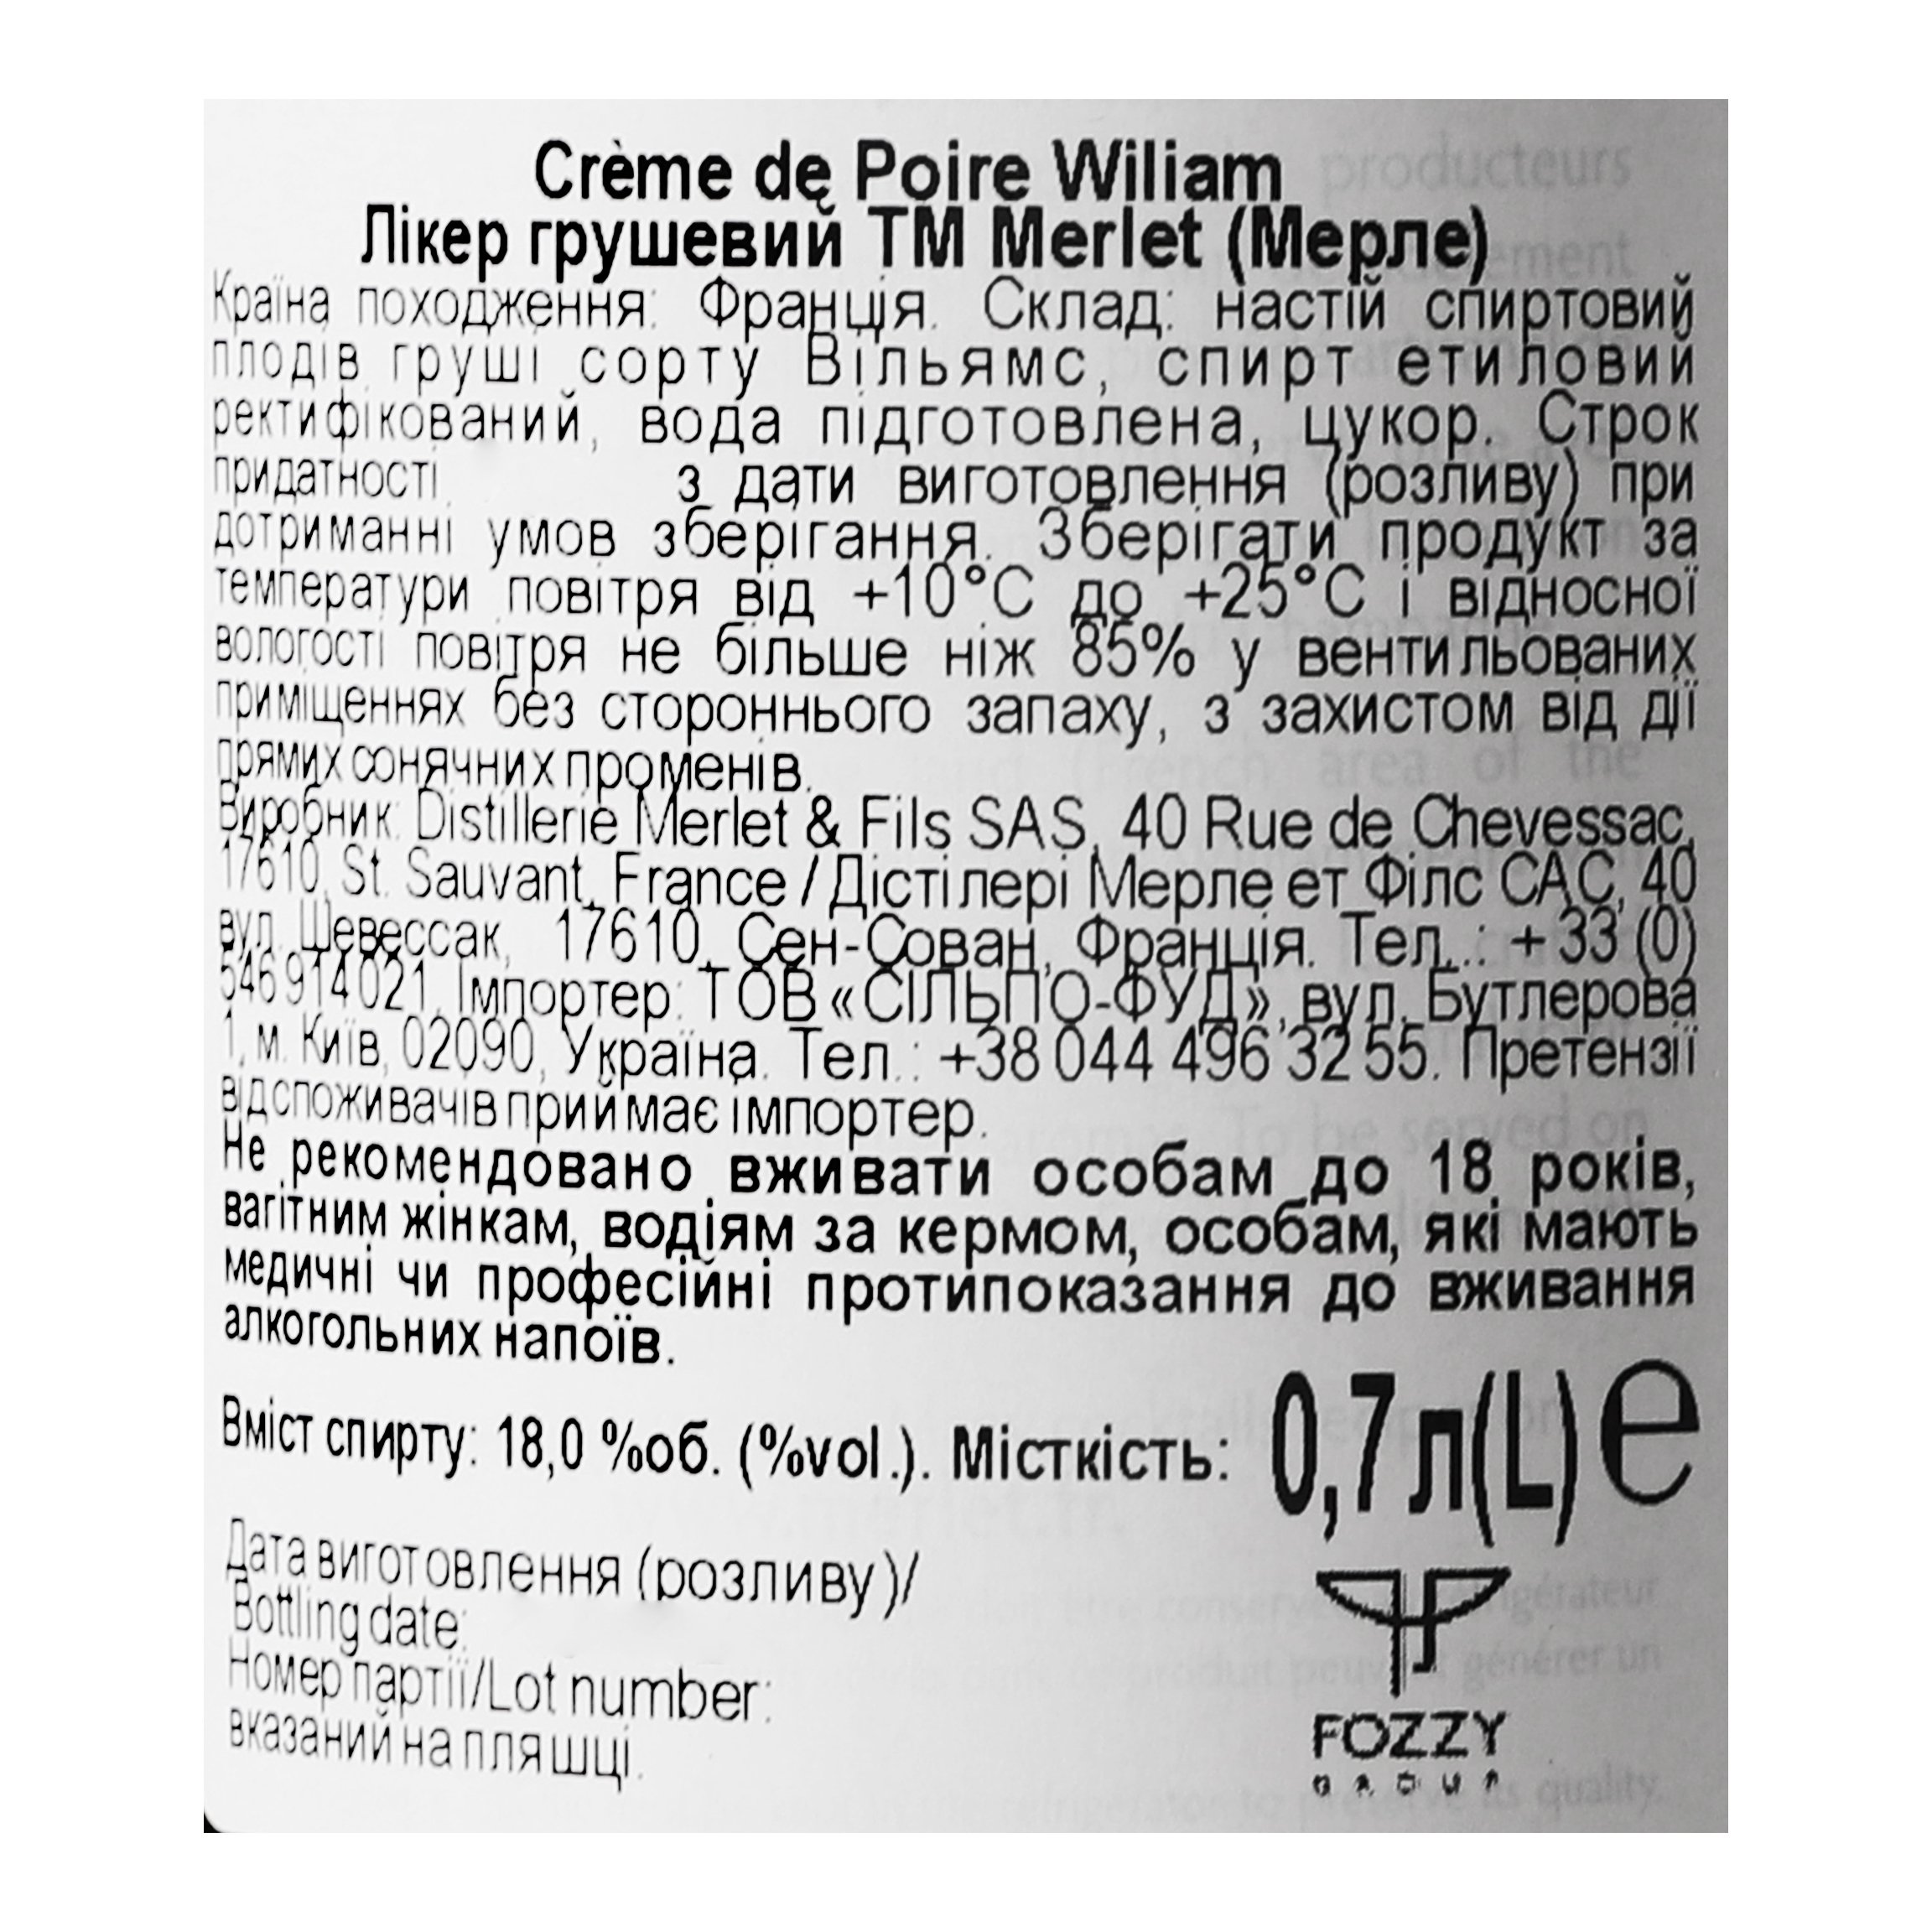 Ликер Merlet Creme de Poire William, 18%, 0,7 л (489024) - фото 5